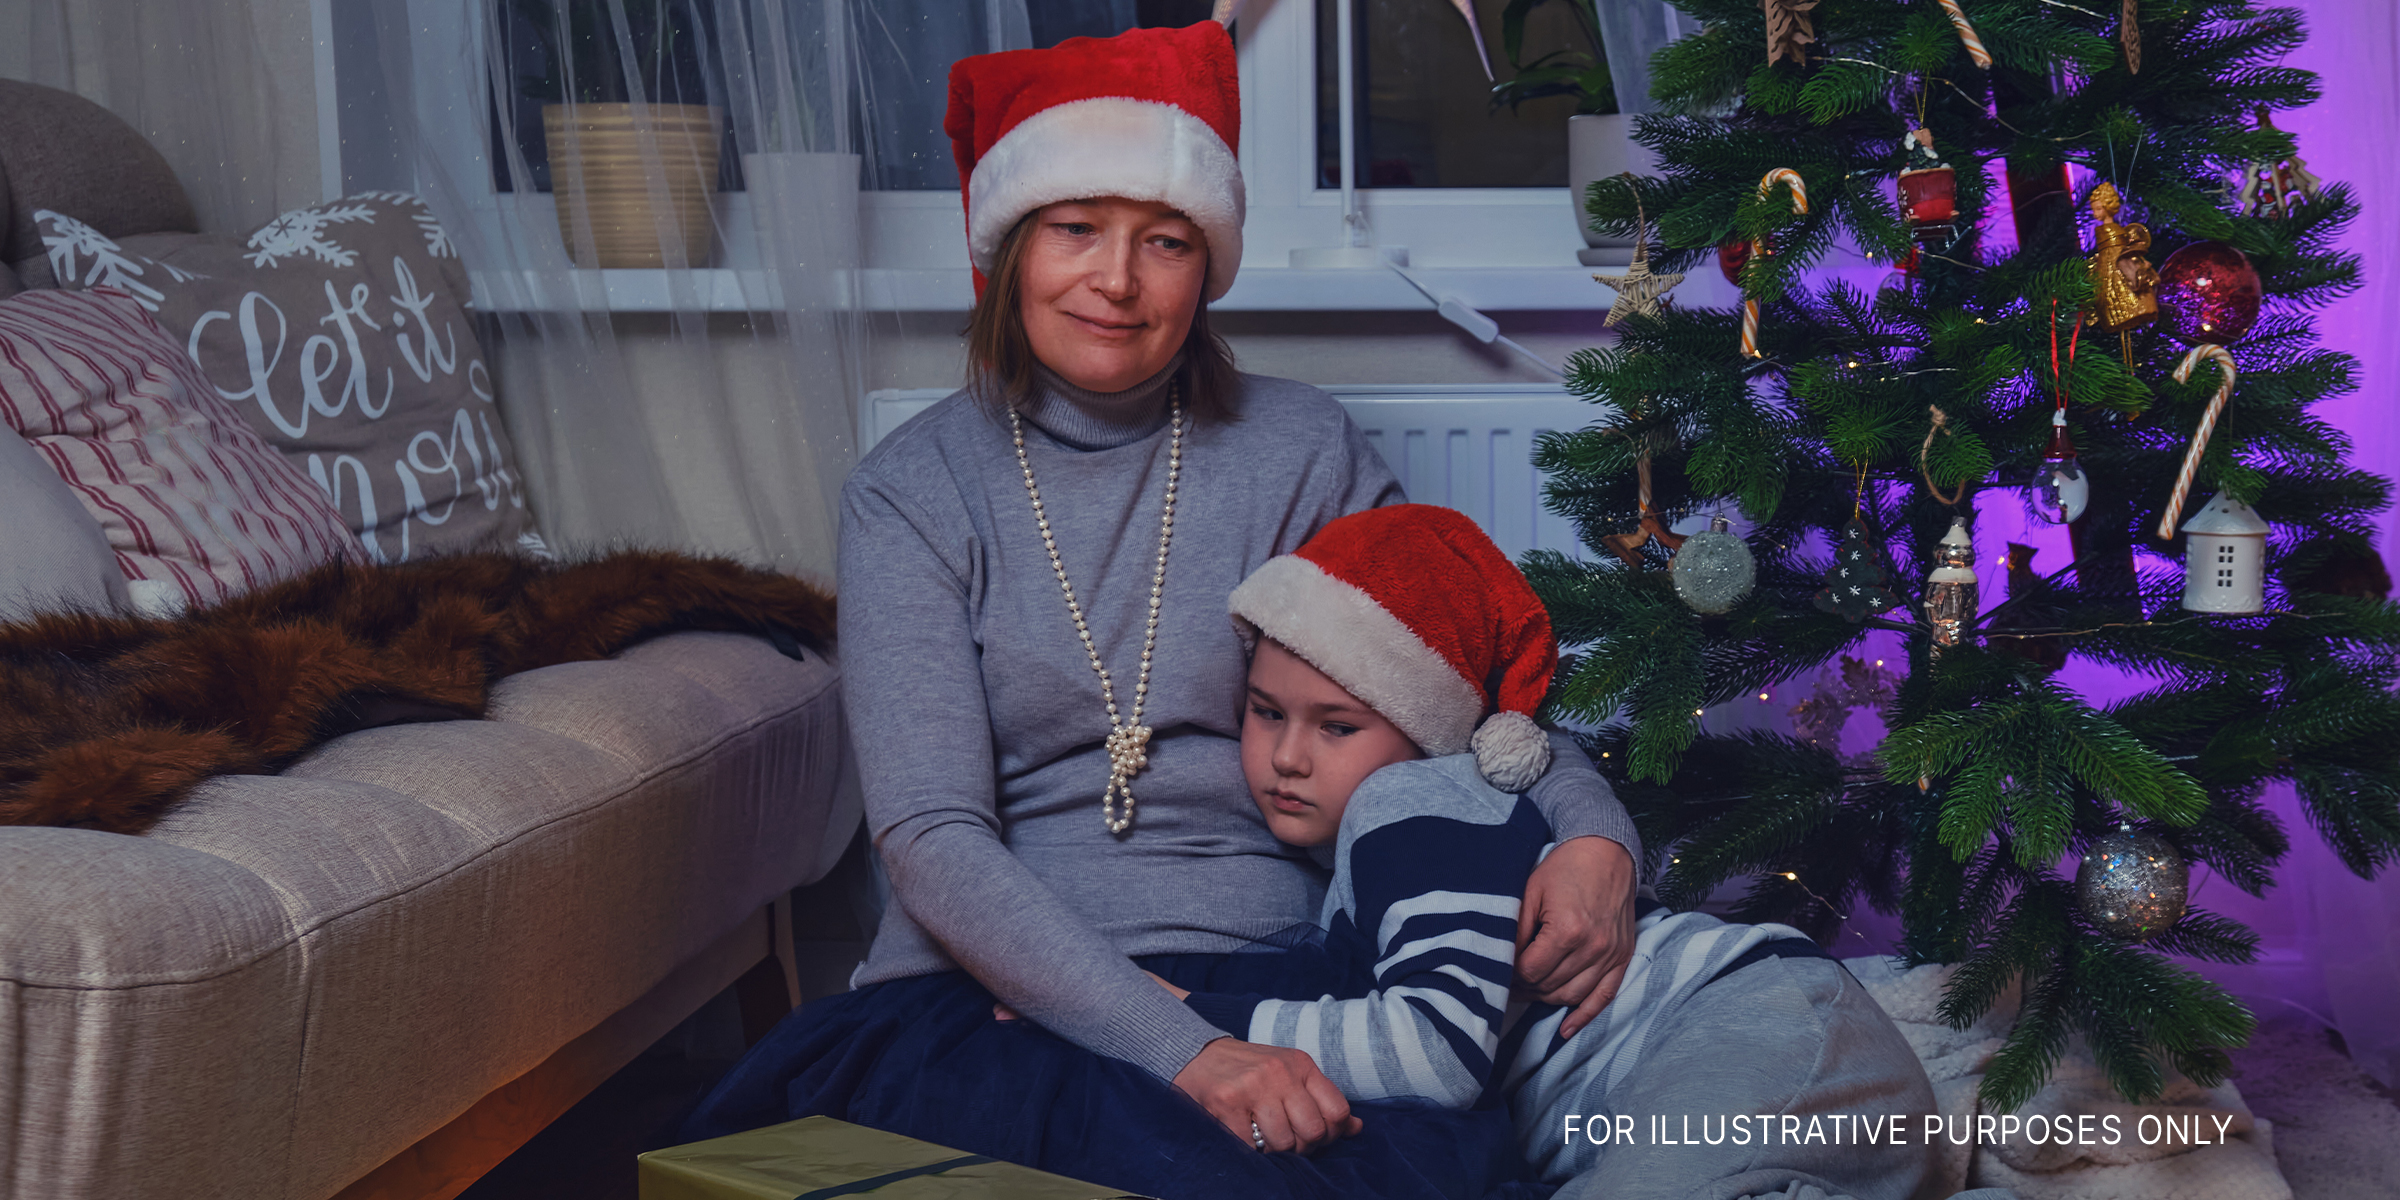 Traurige Mutter und Sohn sitzen neben dem Weihnachtsbaum | Quelle: Getty Images